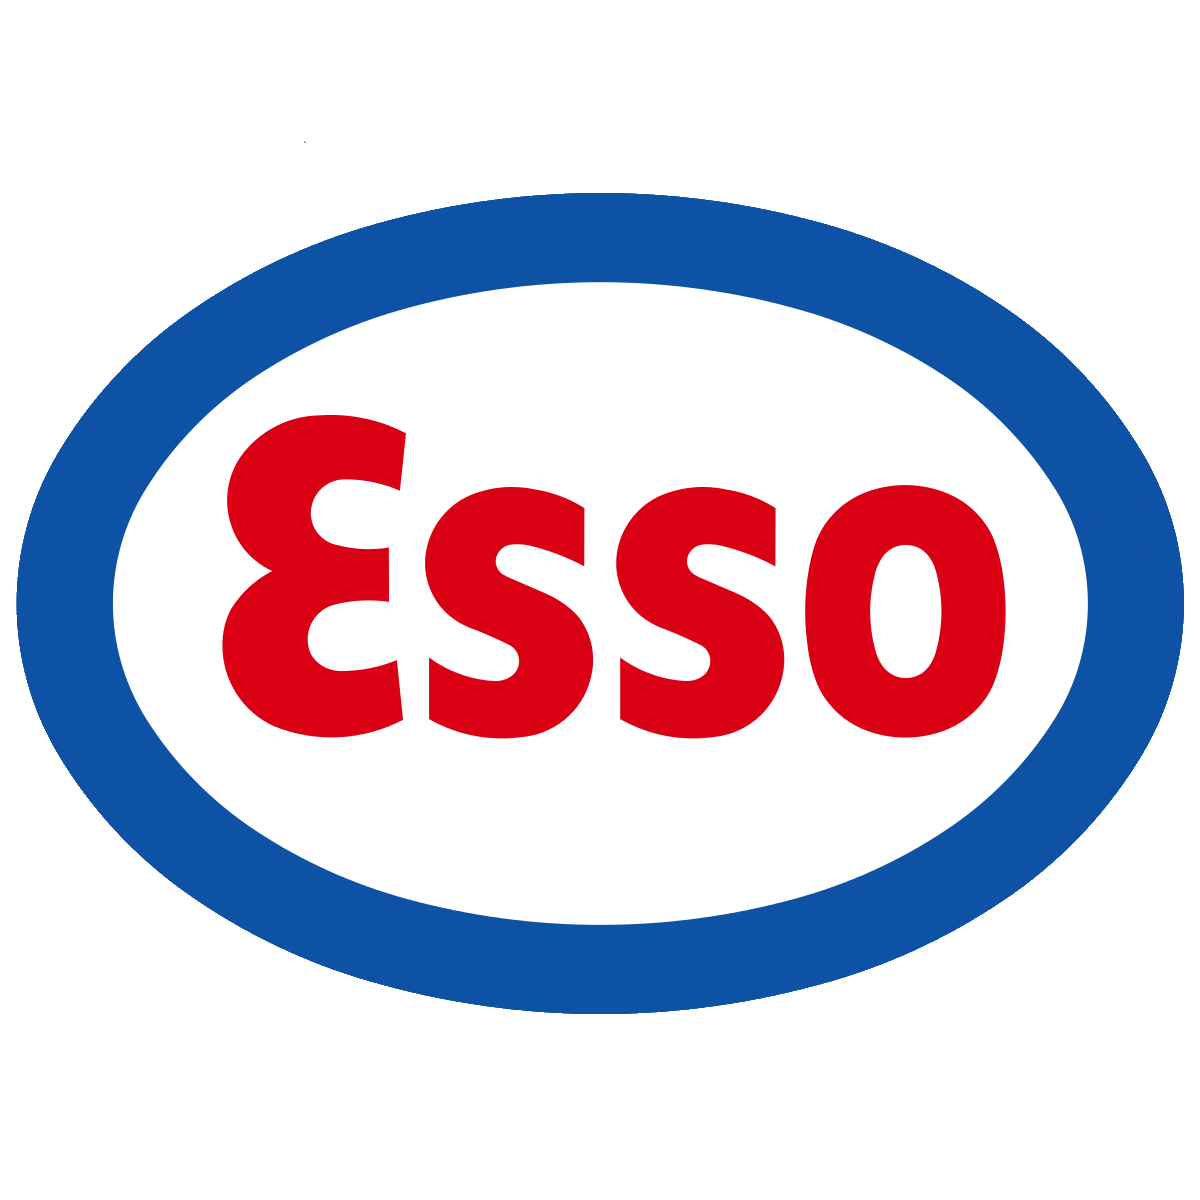 Vernon Essos Logo 1963-64